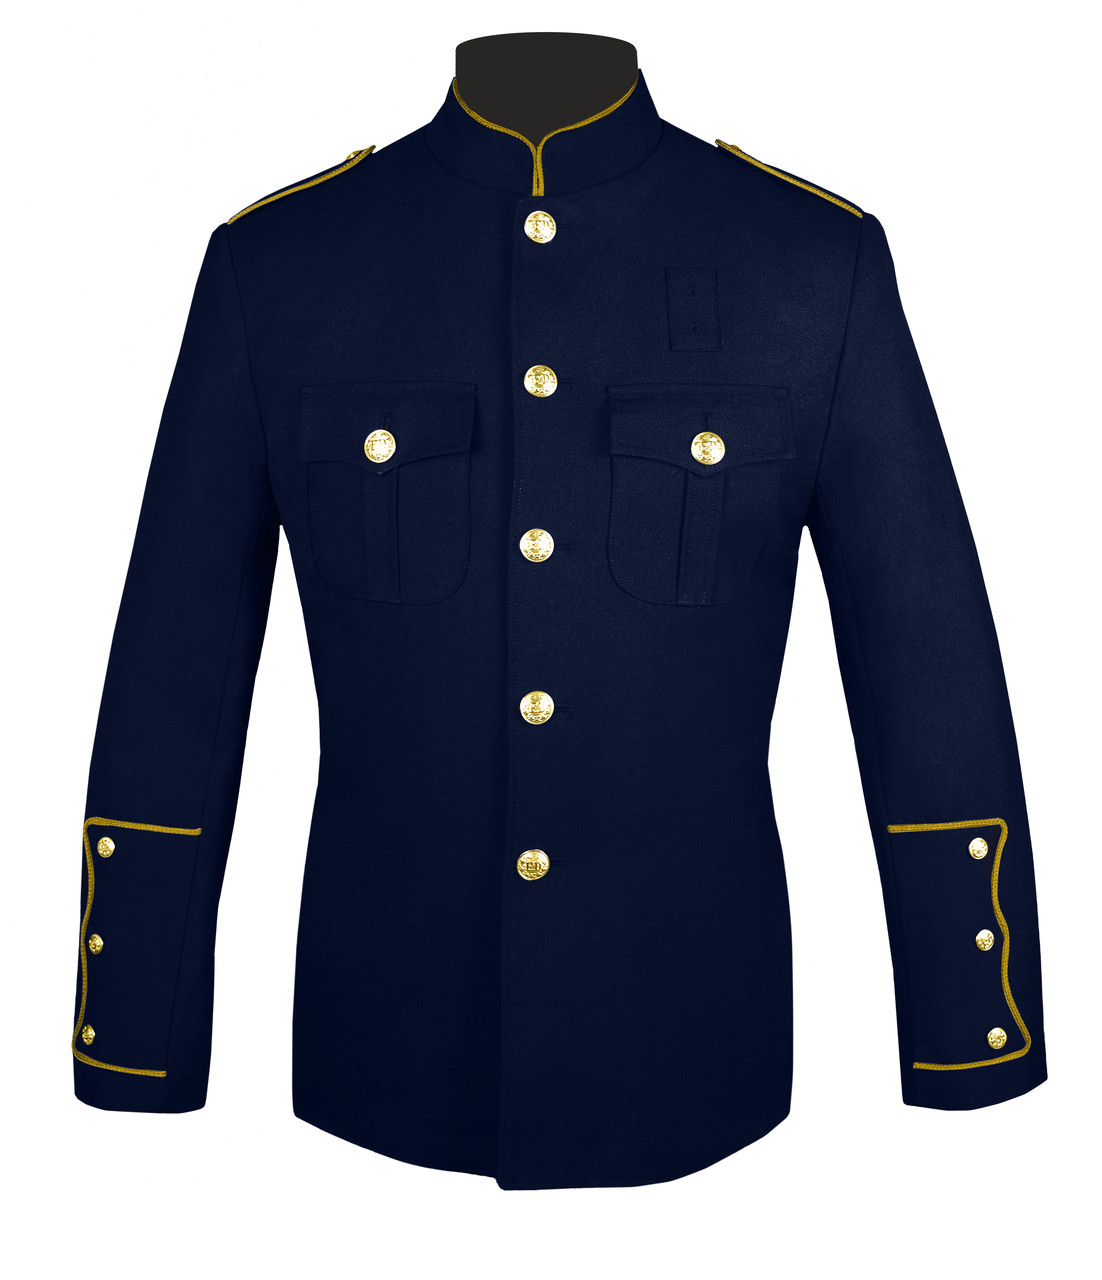 Navy & Gold Police Honor Guard Jacket | J. Higgins, Ltd.